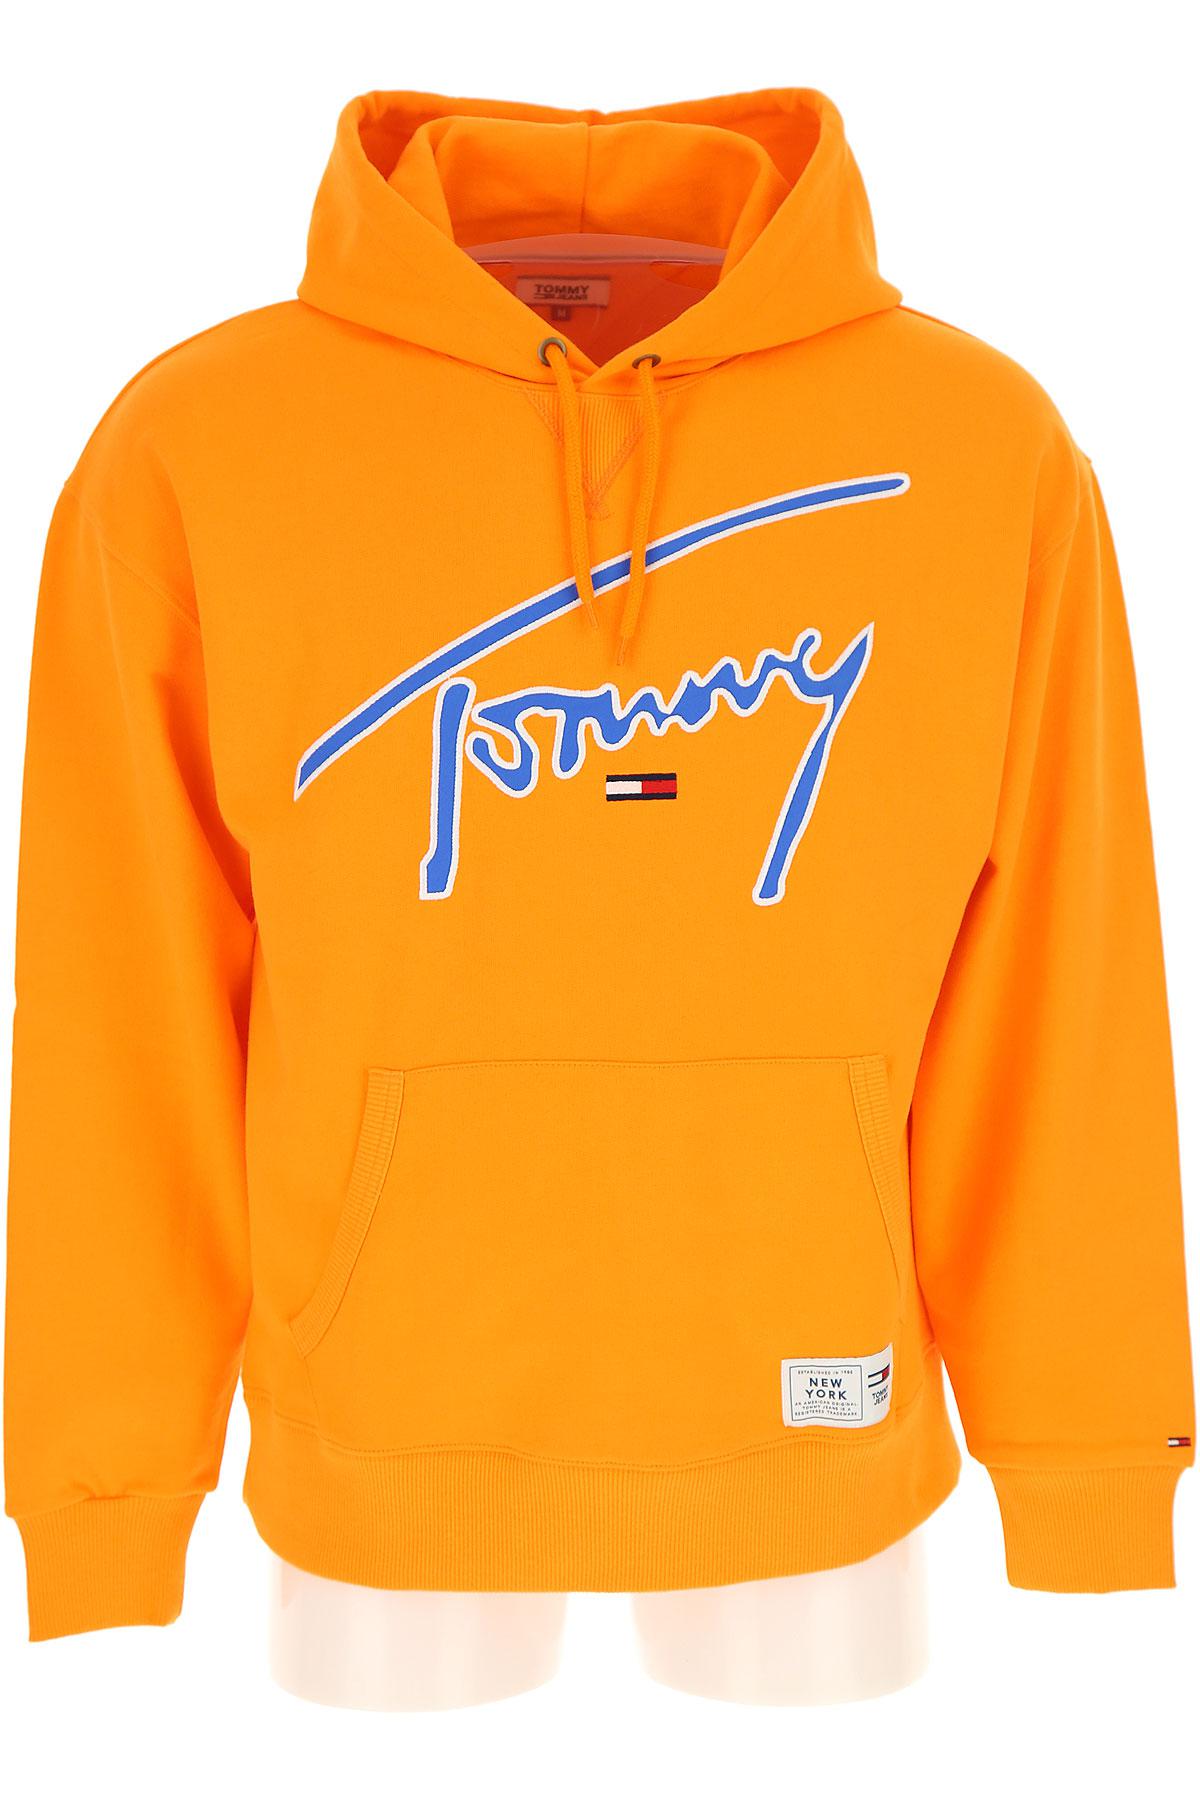 orange tommy hoodie